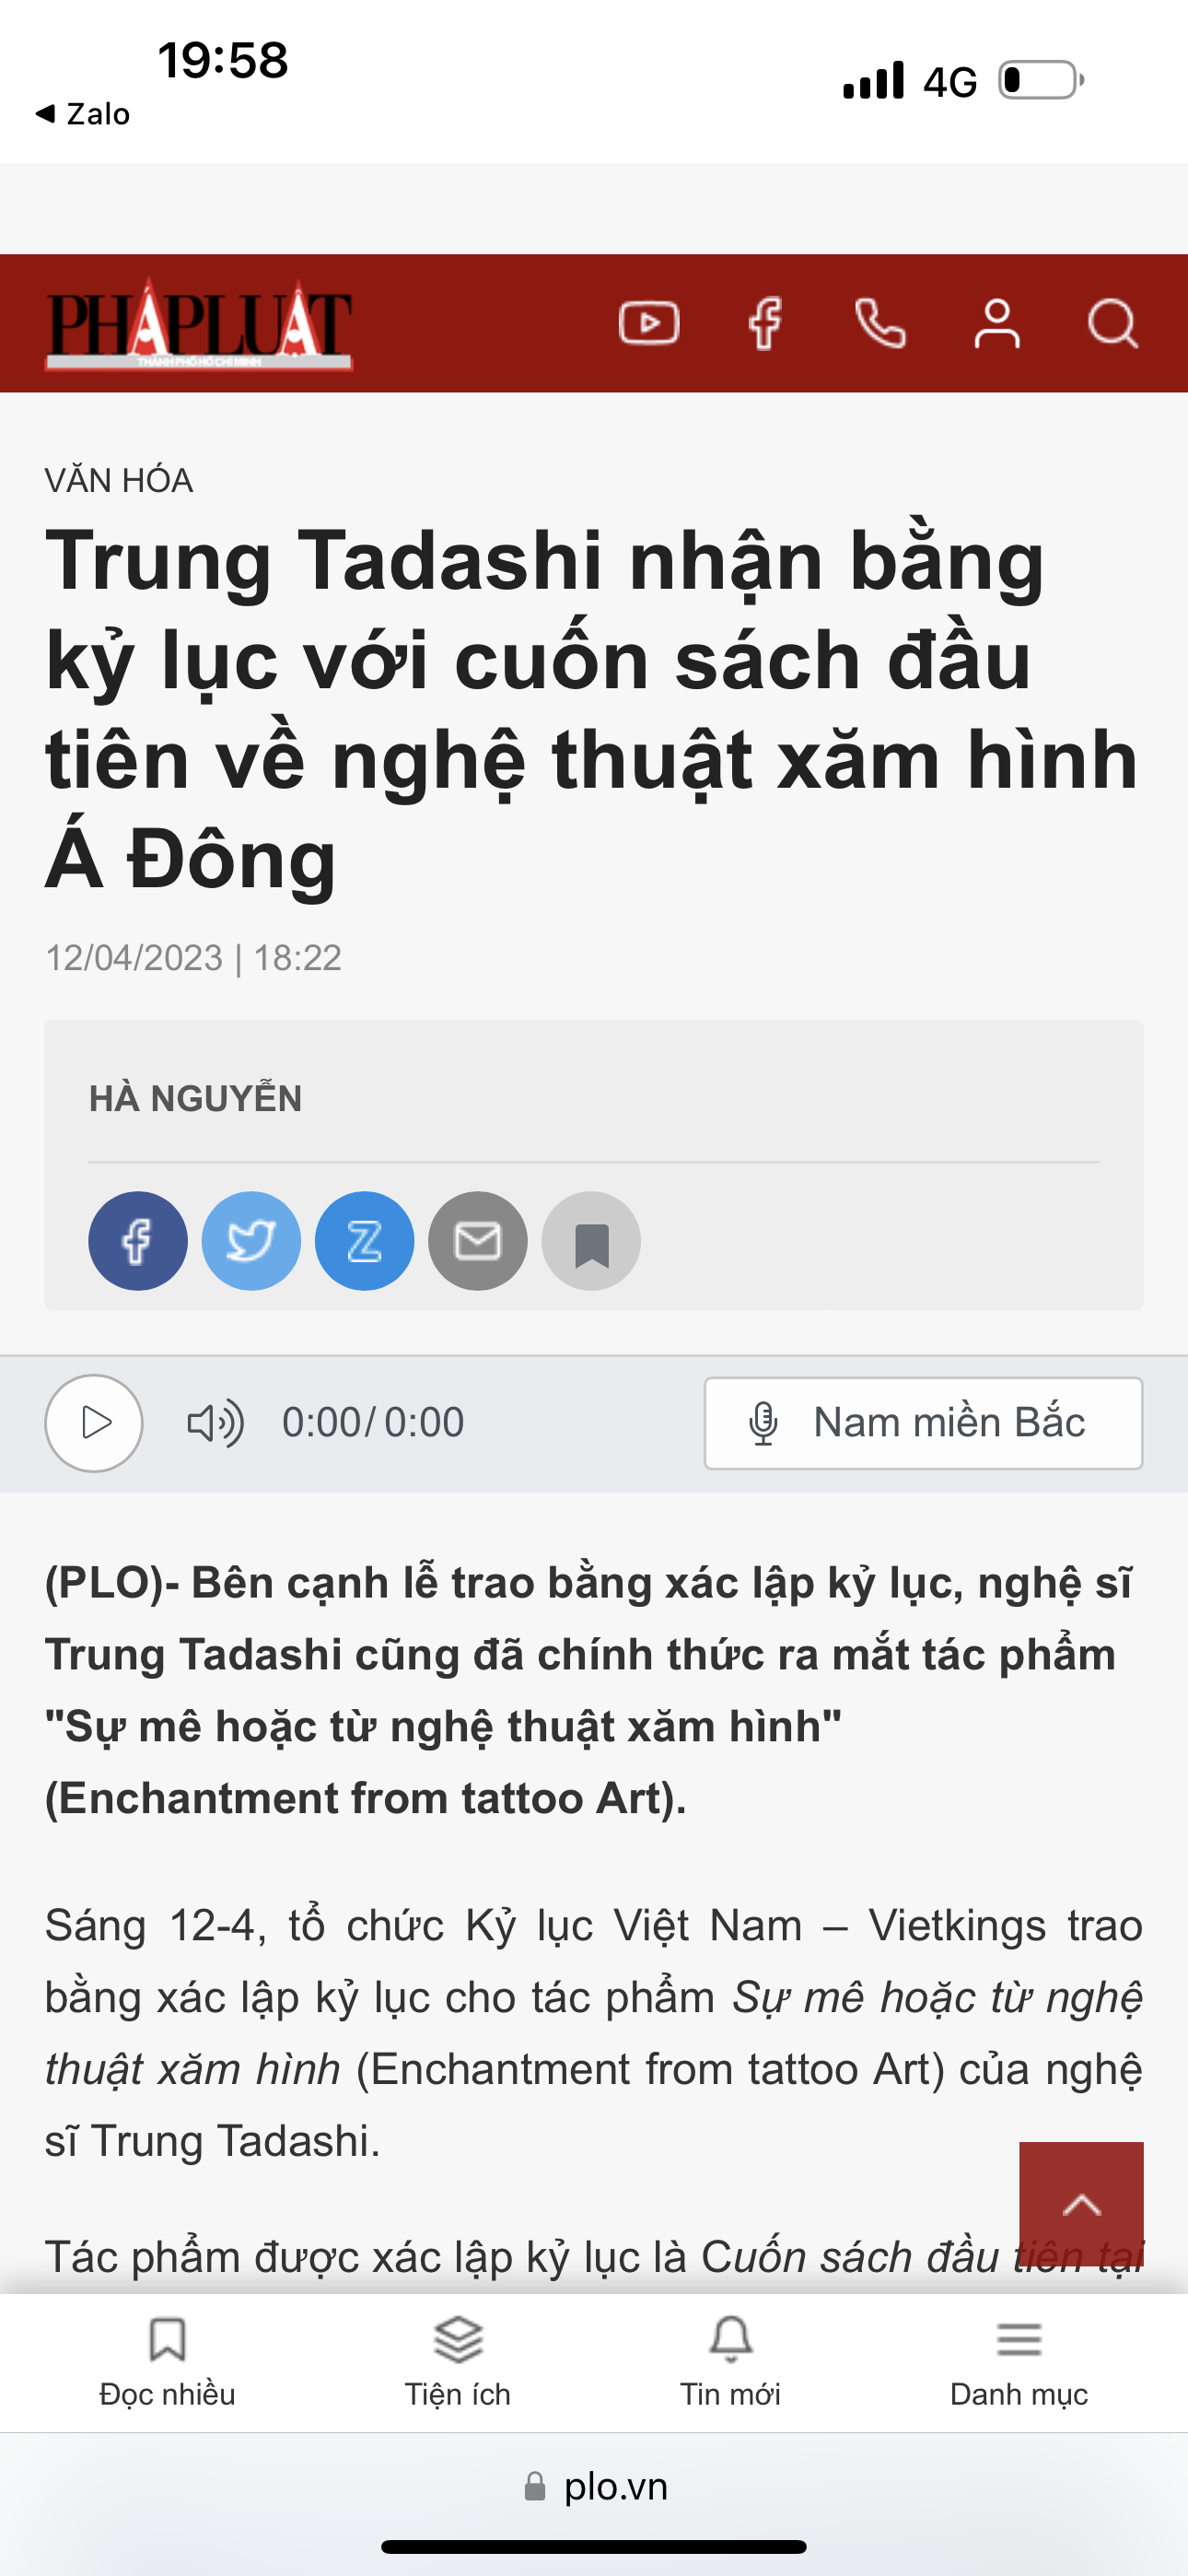 Phap Luat online newspaper